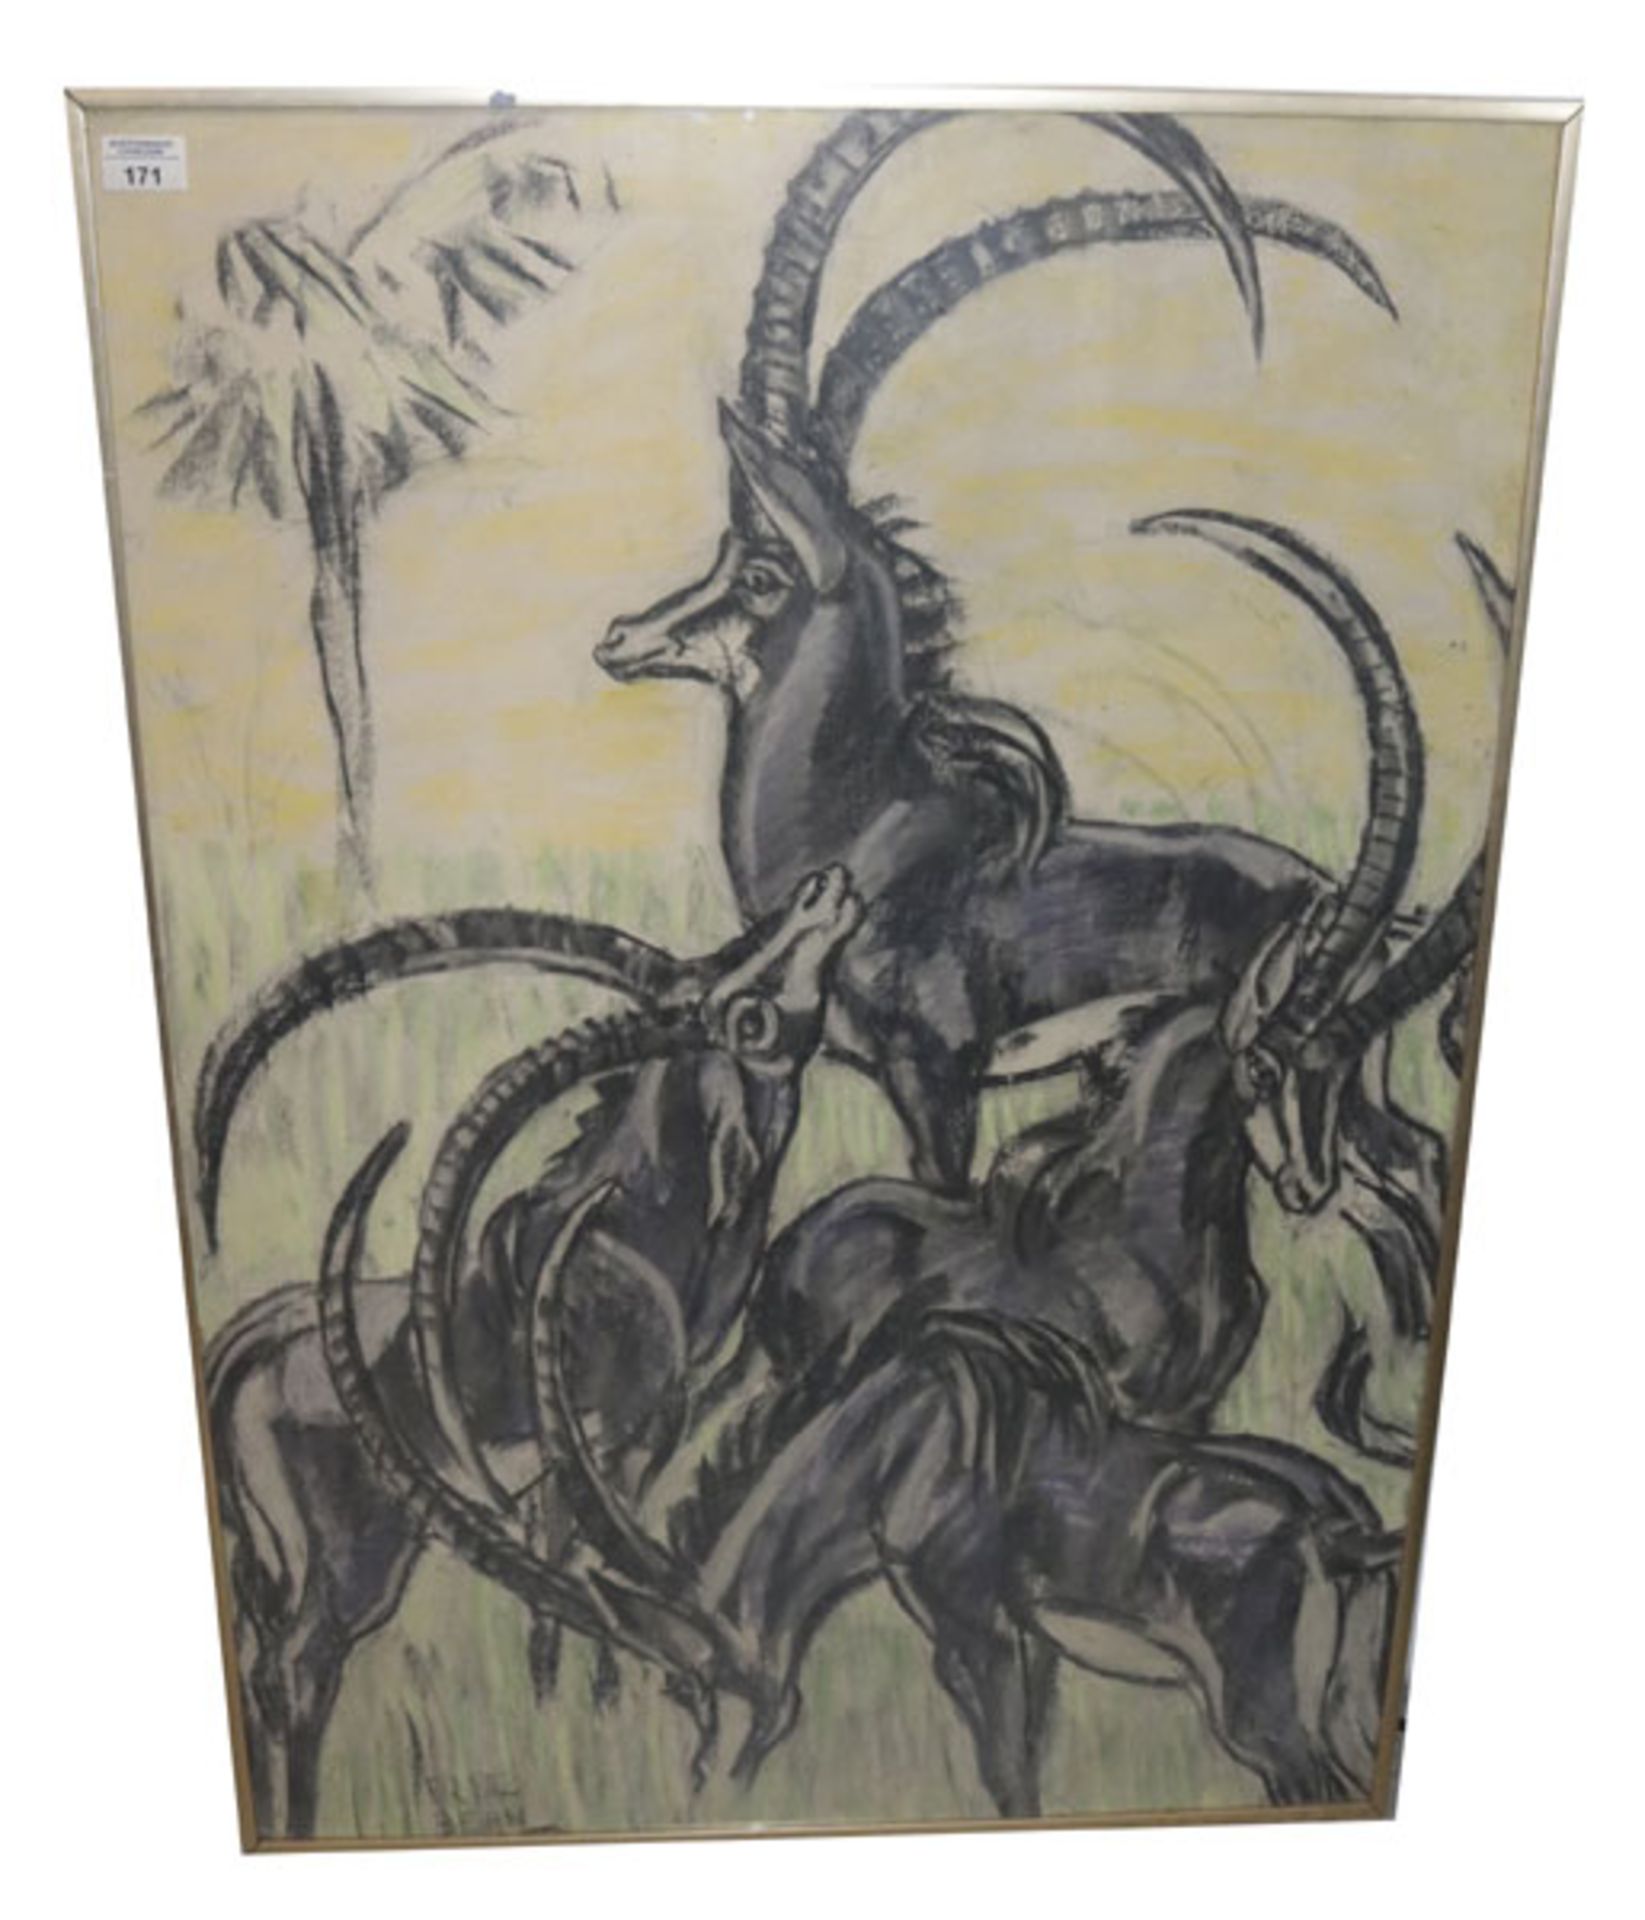 Gemälde Kreidepastell 'Antilopen', signiert Fritz Behn, * 1878 Klein Grabow + 1970 München, unter Gl